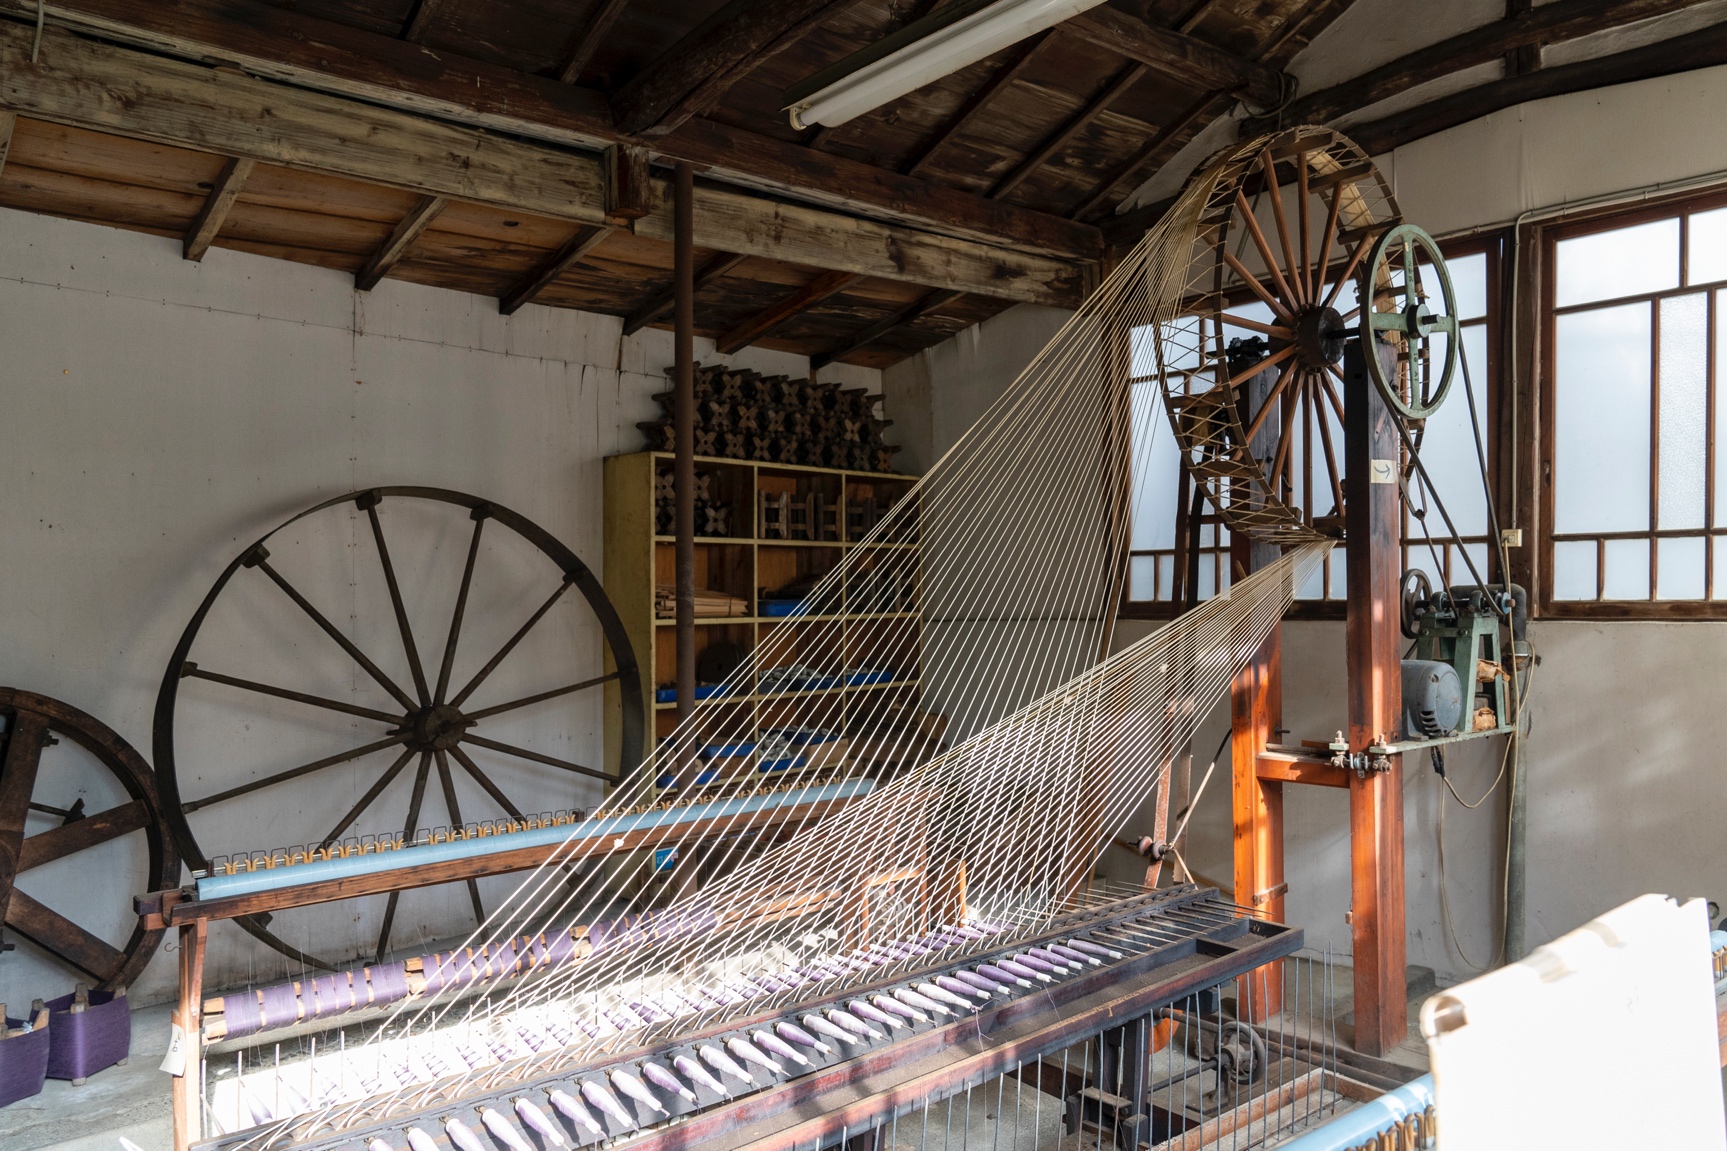 現役に戻った八丁撚糸機。八丁撚糸機は1783年、岩瀬吉兵衛により水力を動力源にした機械として考案されたという。1メートルに約3千回もの強い撚りを緯糸にかける。